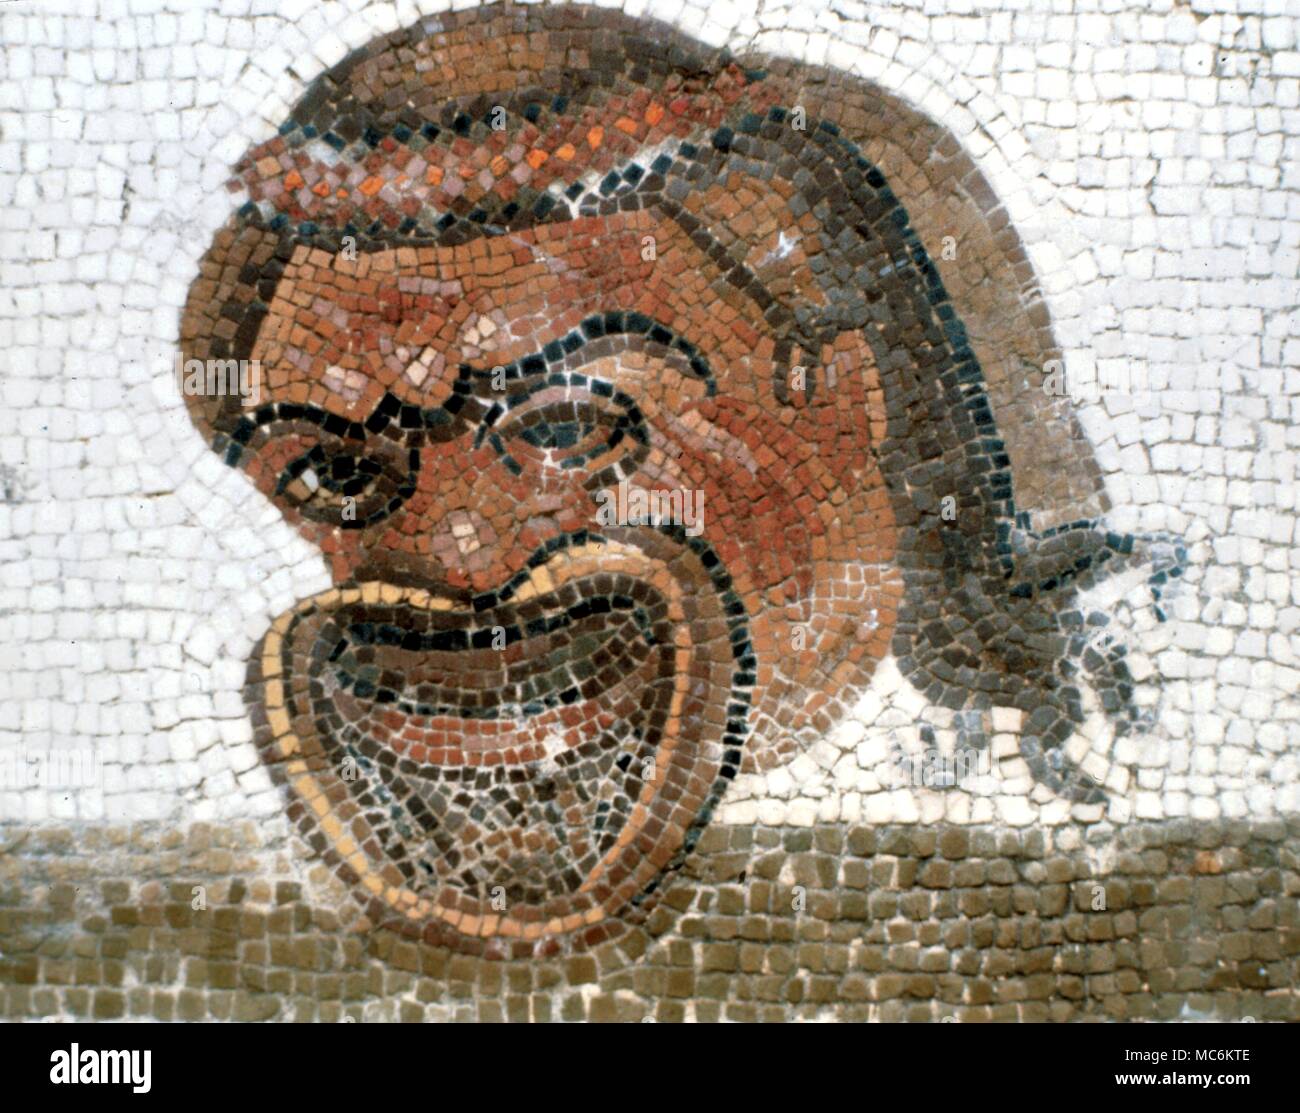 Les masques. Mosaïque de masque de tragédie grecque, à partir d'une ancienne chaussée grec près de Argos, Grèce. Banque D'Images